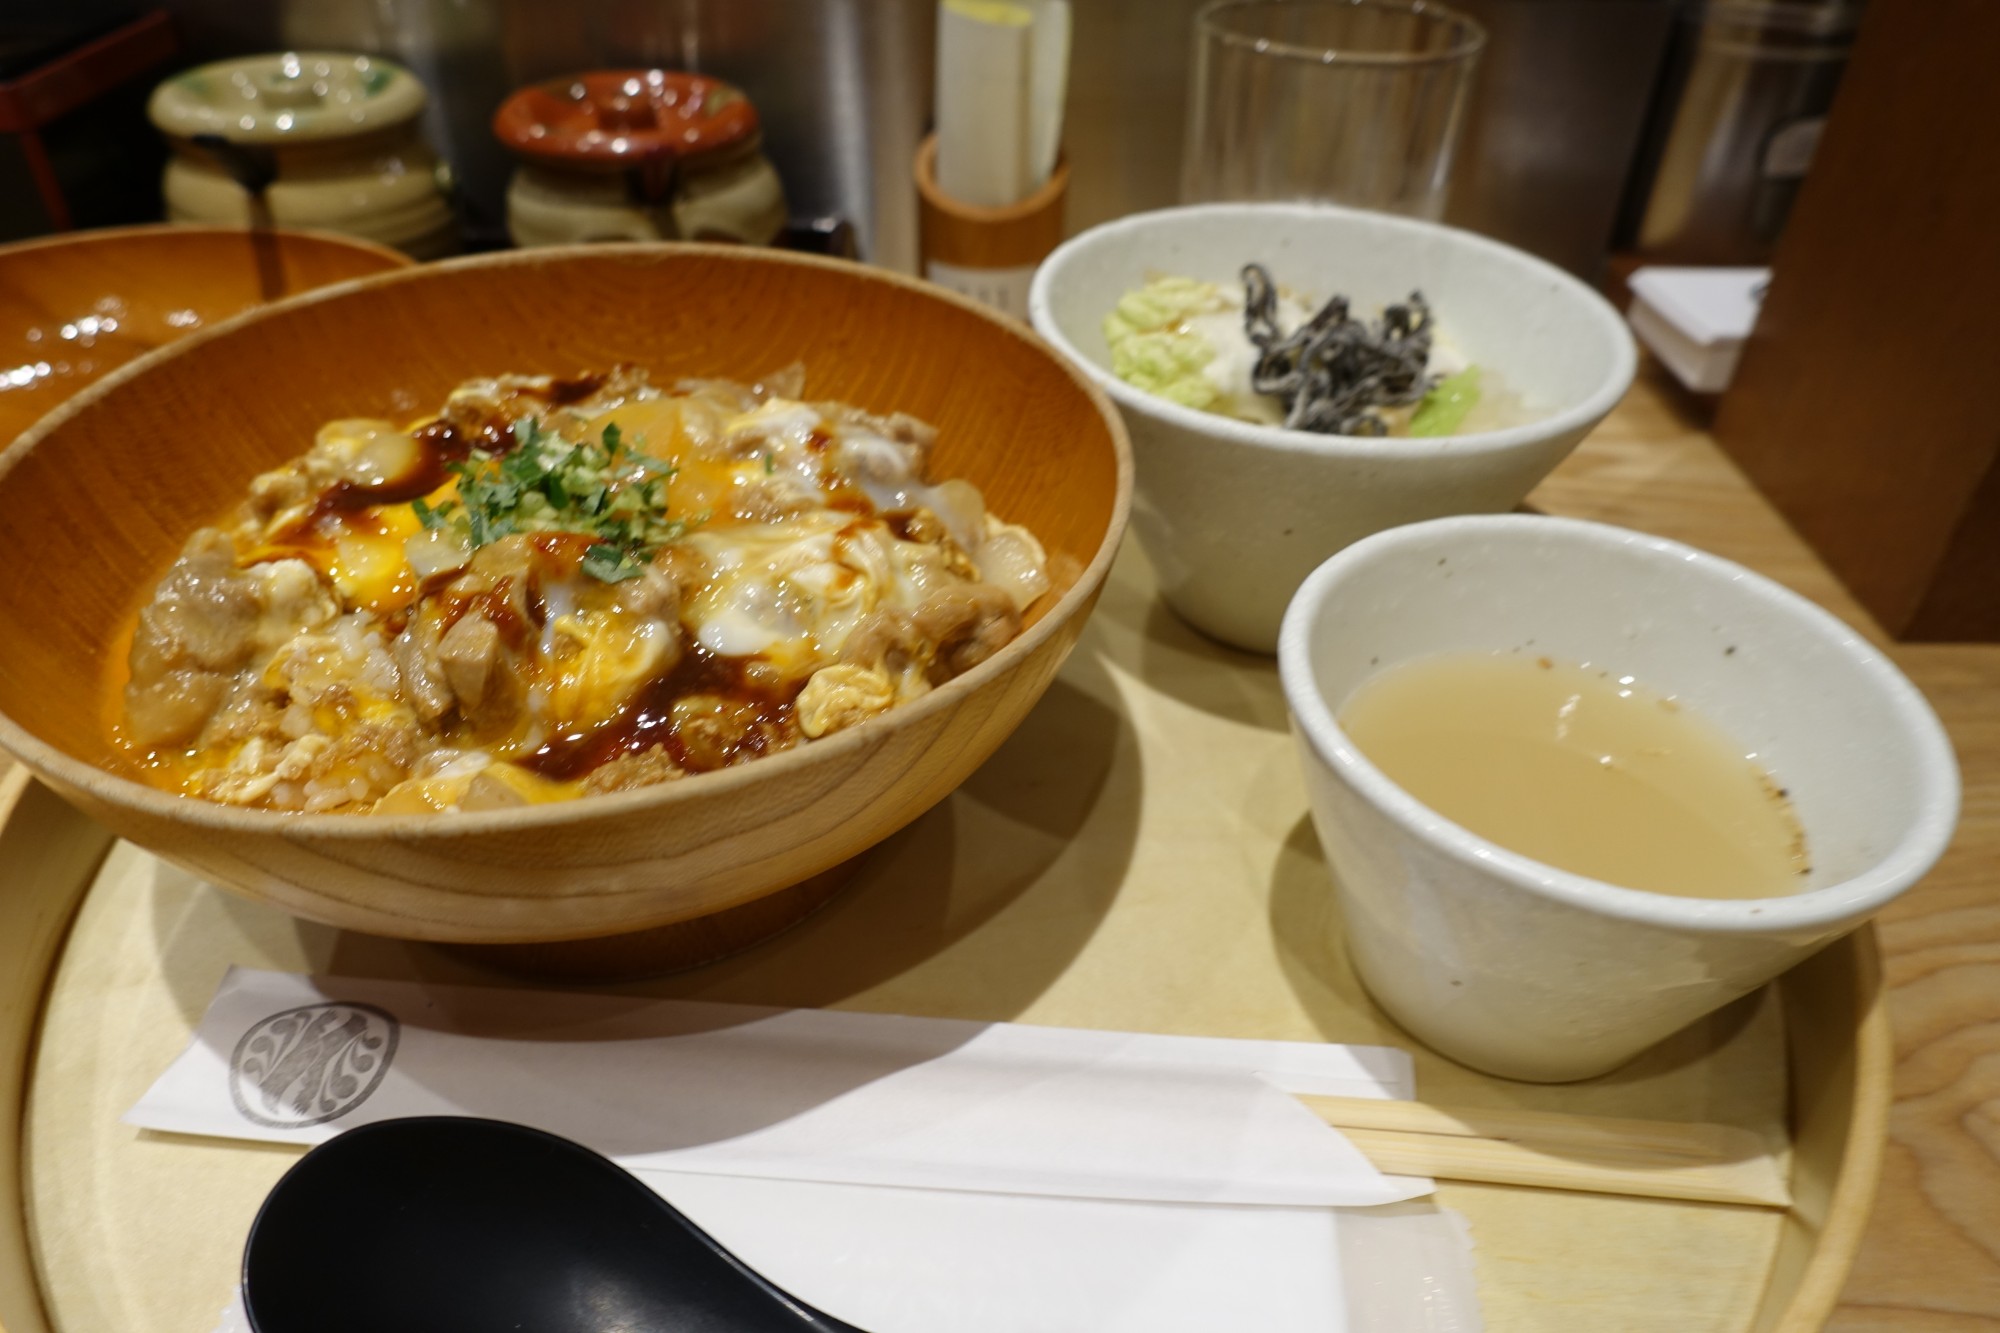 NFC – Chicken in Nagoya